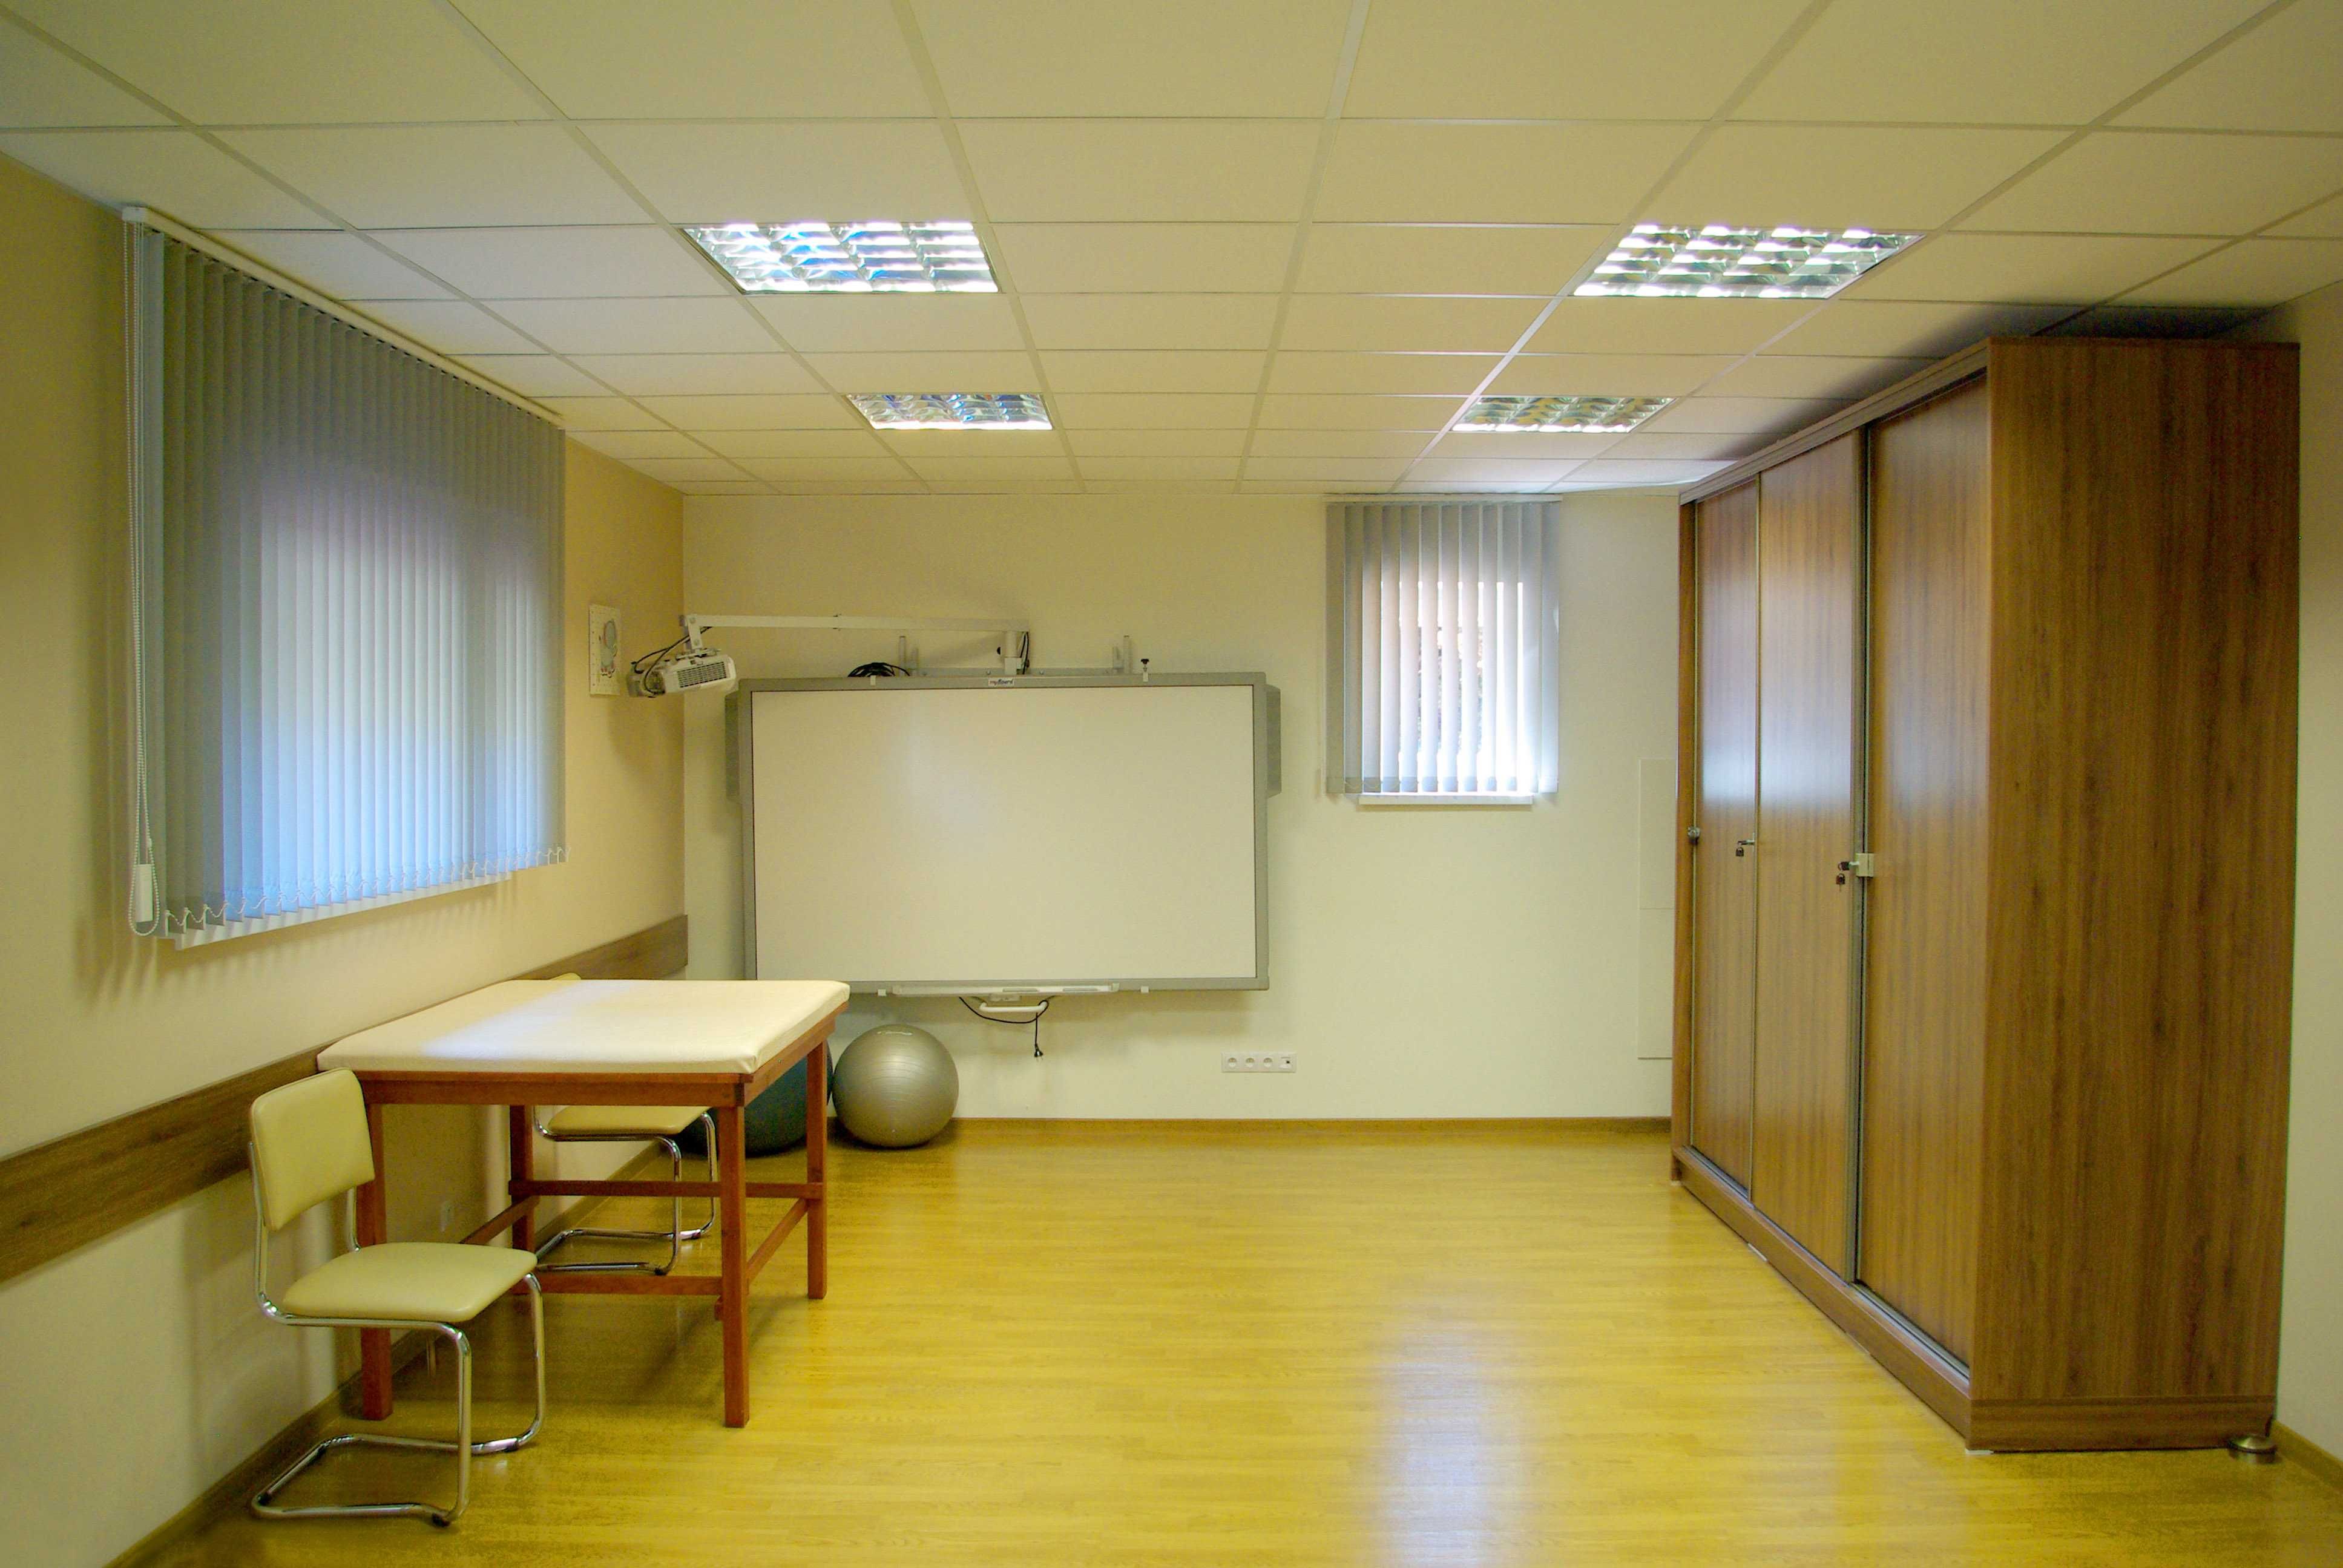 Wynajem sali 47 m2 w weekendy - warsztaty, szkolenia, zajęcia grupowe